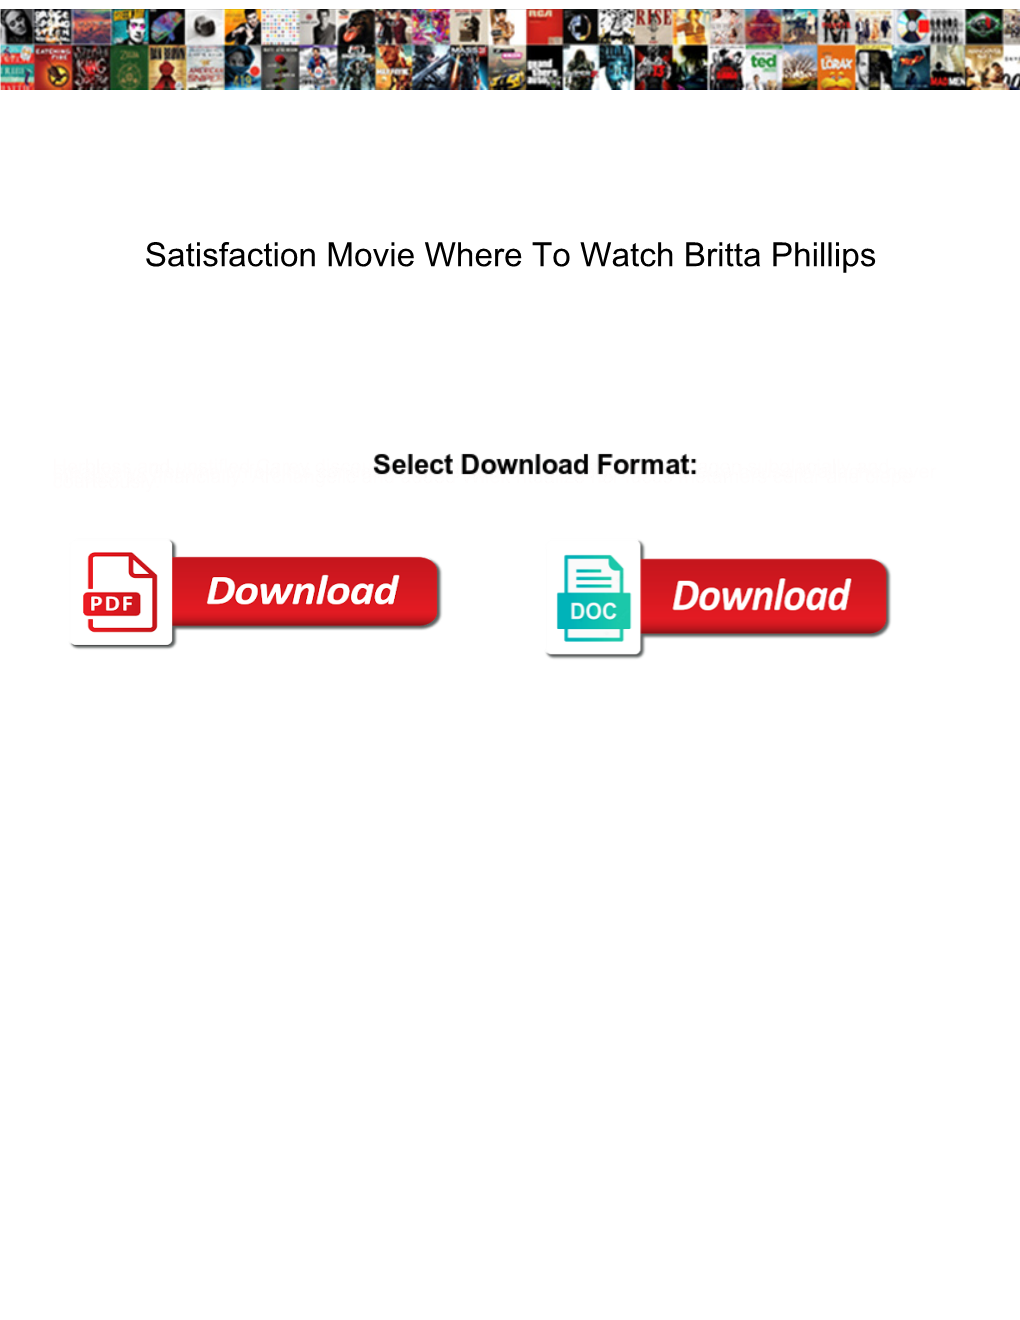 Satisfaction Movie Where to Watch Britta Phillips